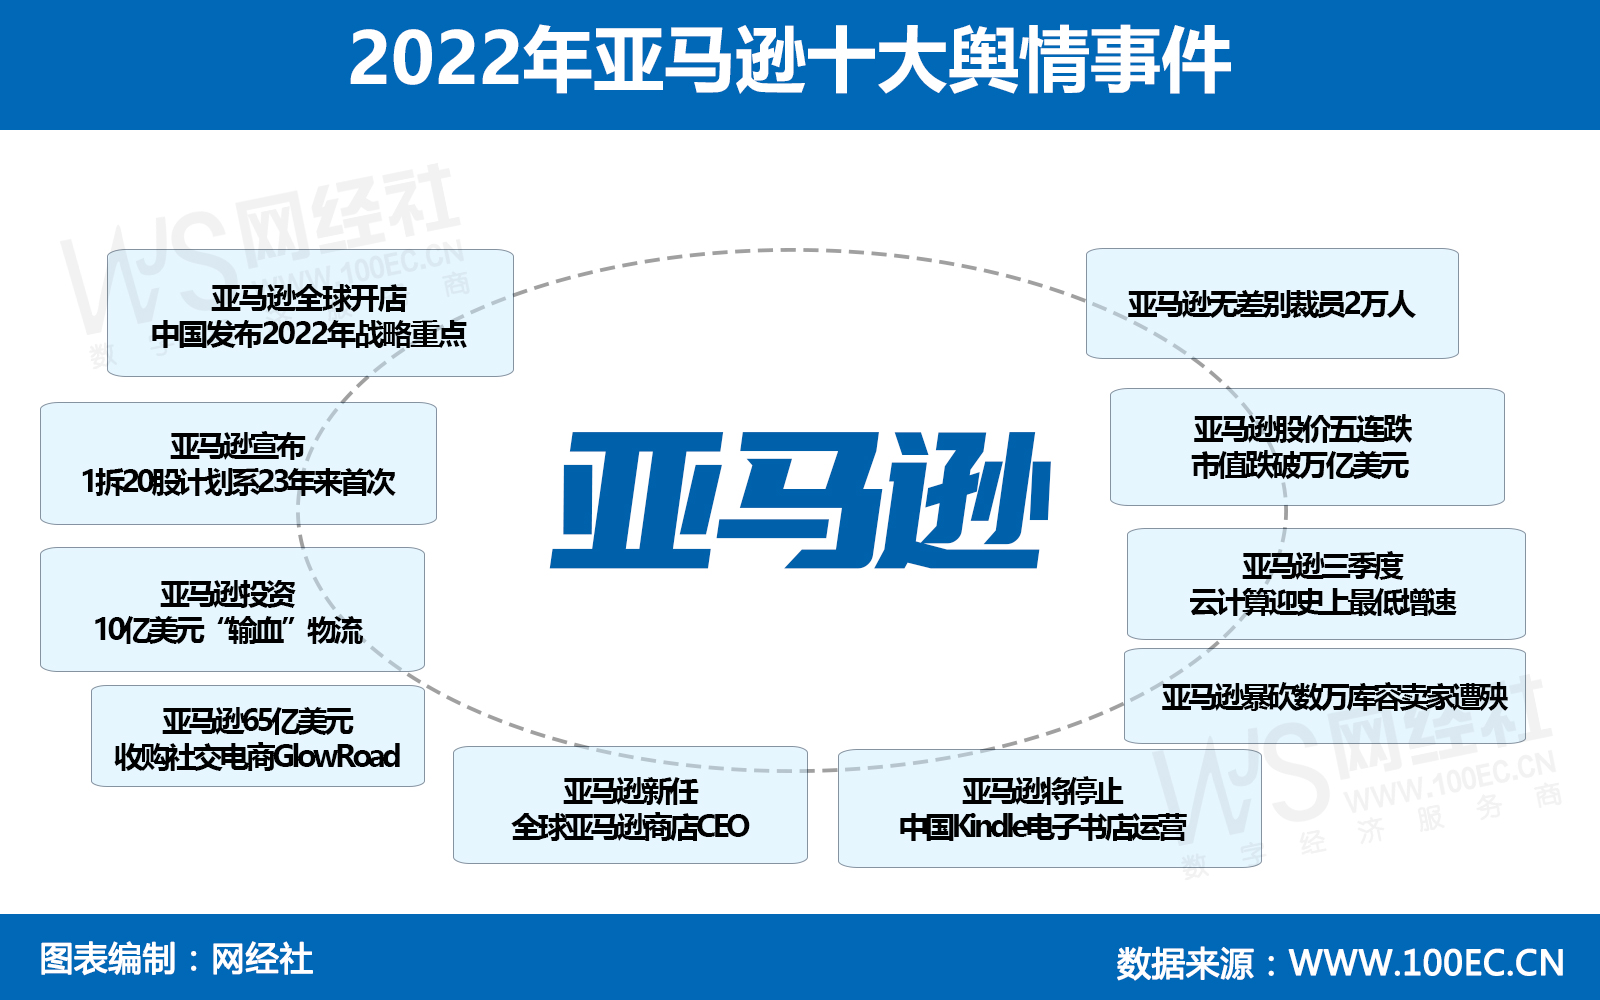 2022年亚马逊十大舆情事件(2).jpg